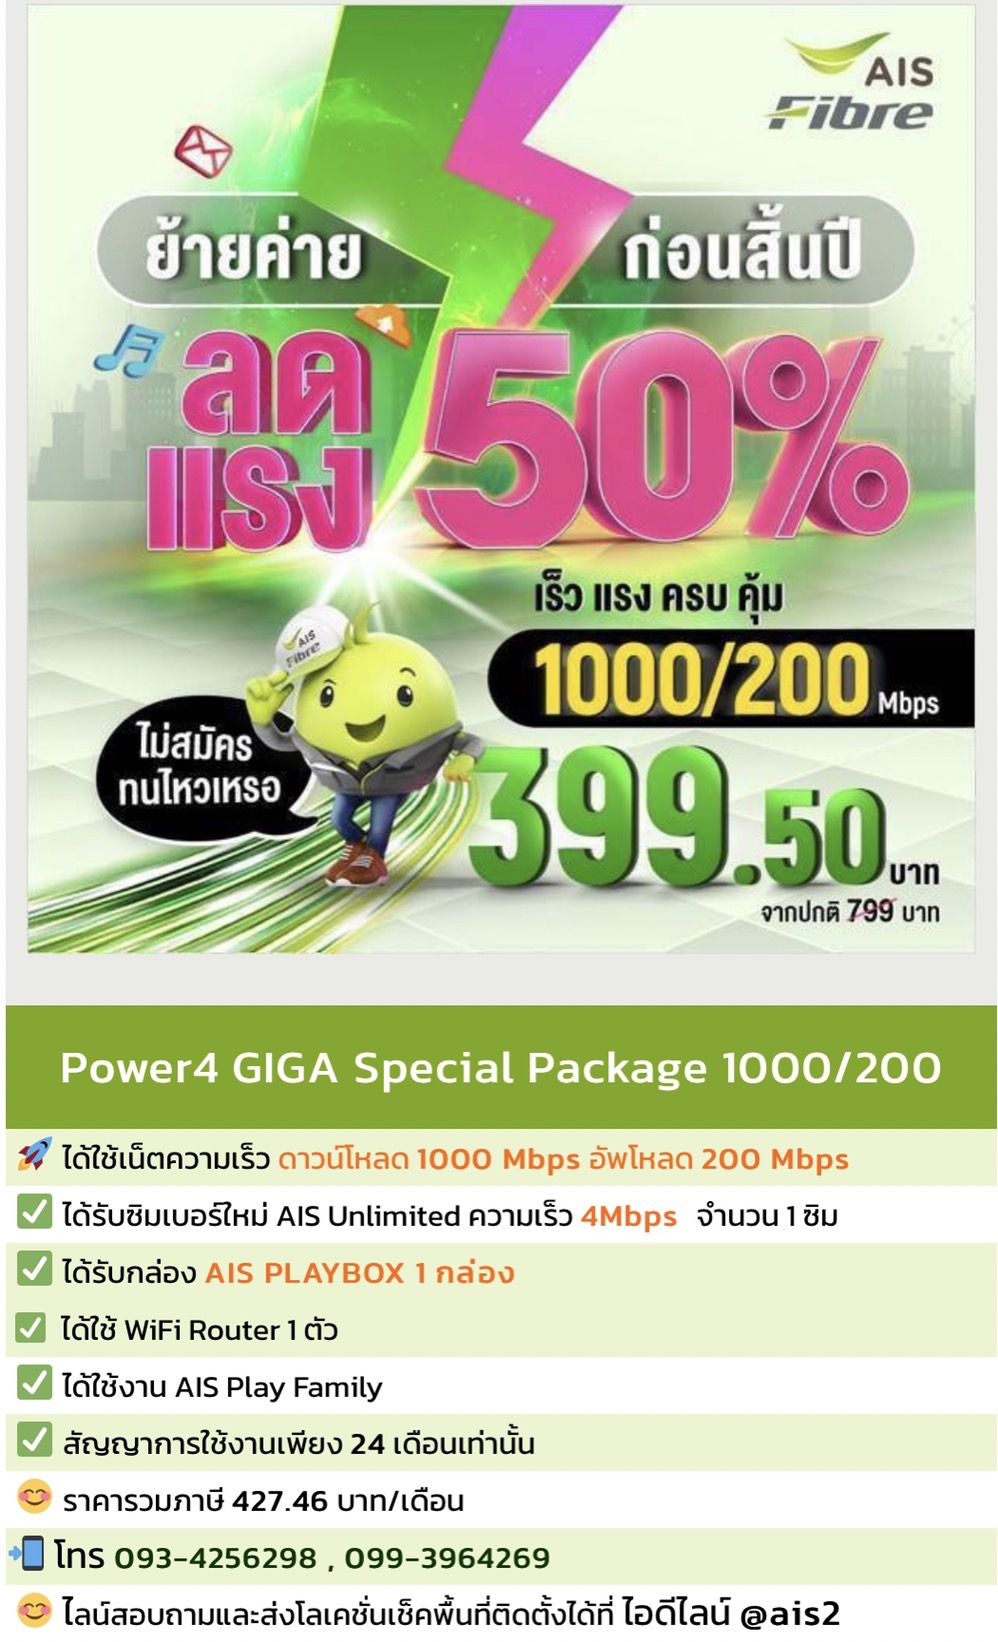 แพ็กเกจ Power4 GIGA Special ความเร็ว 1000/200 